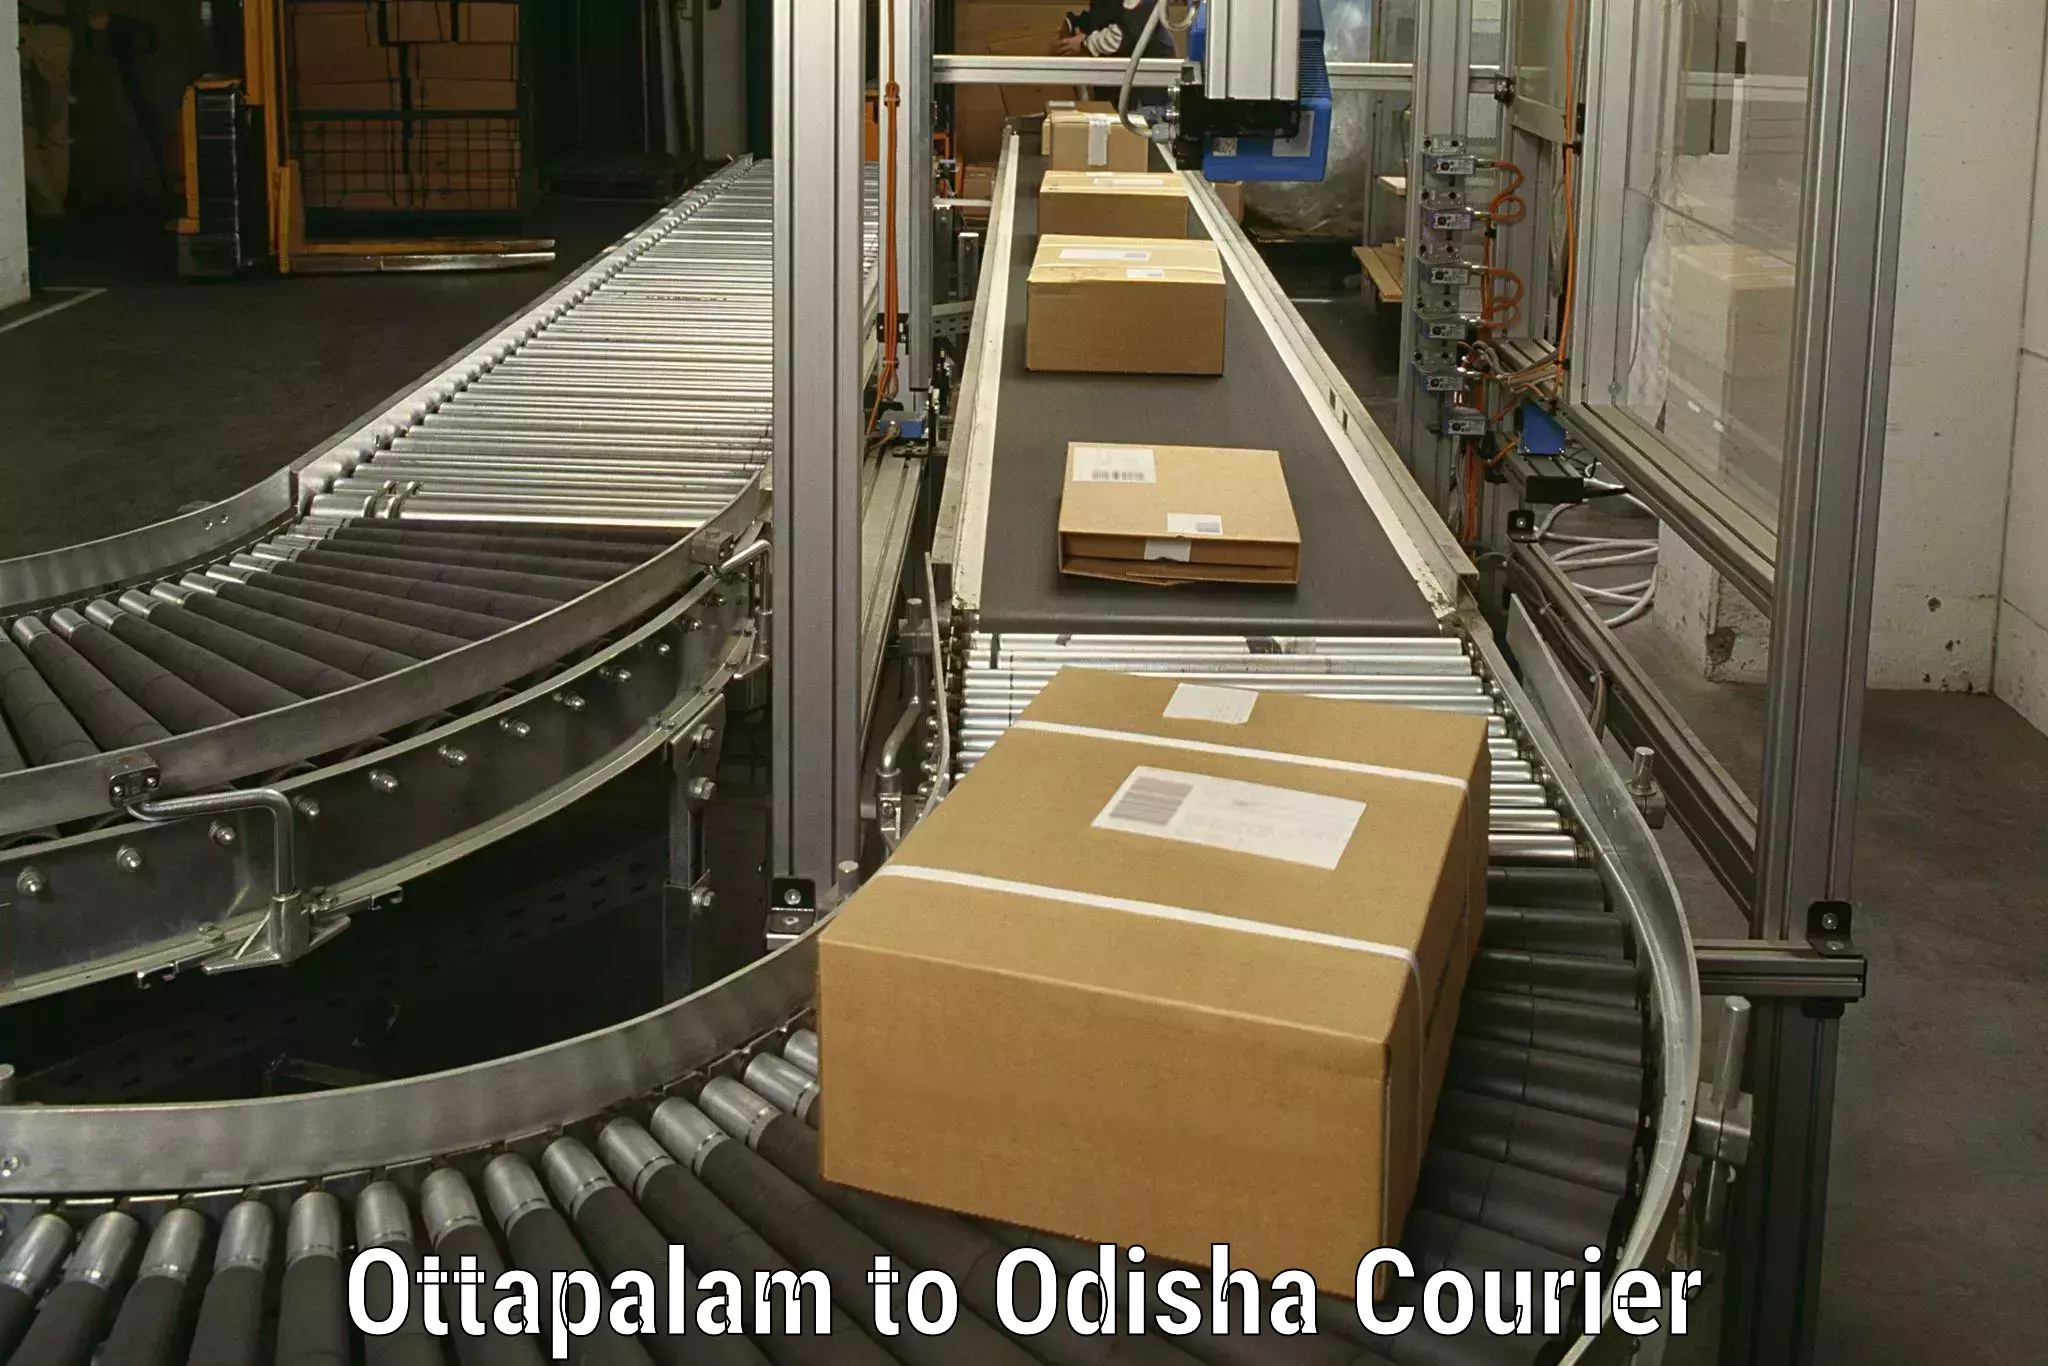 Household goods transporters Ottapalam to Ukhunda